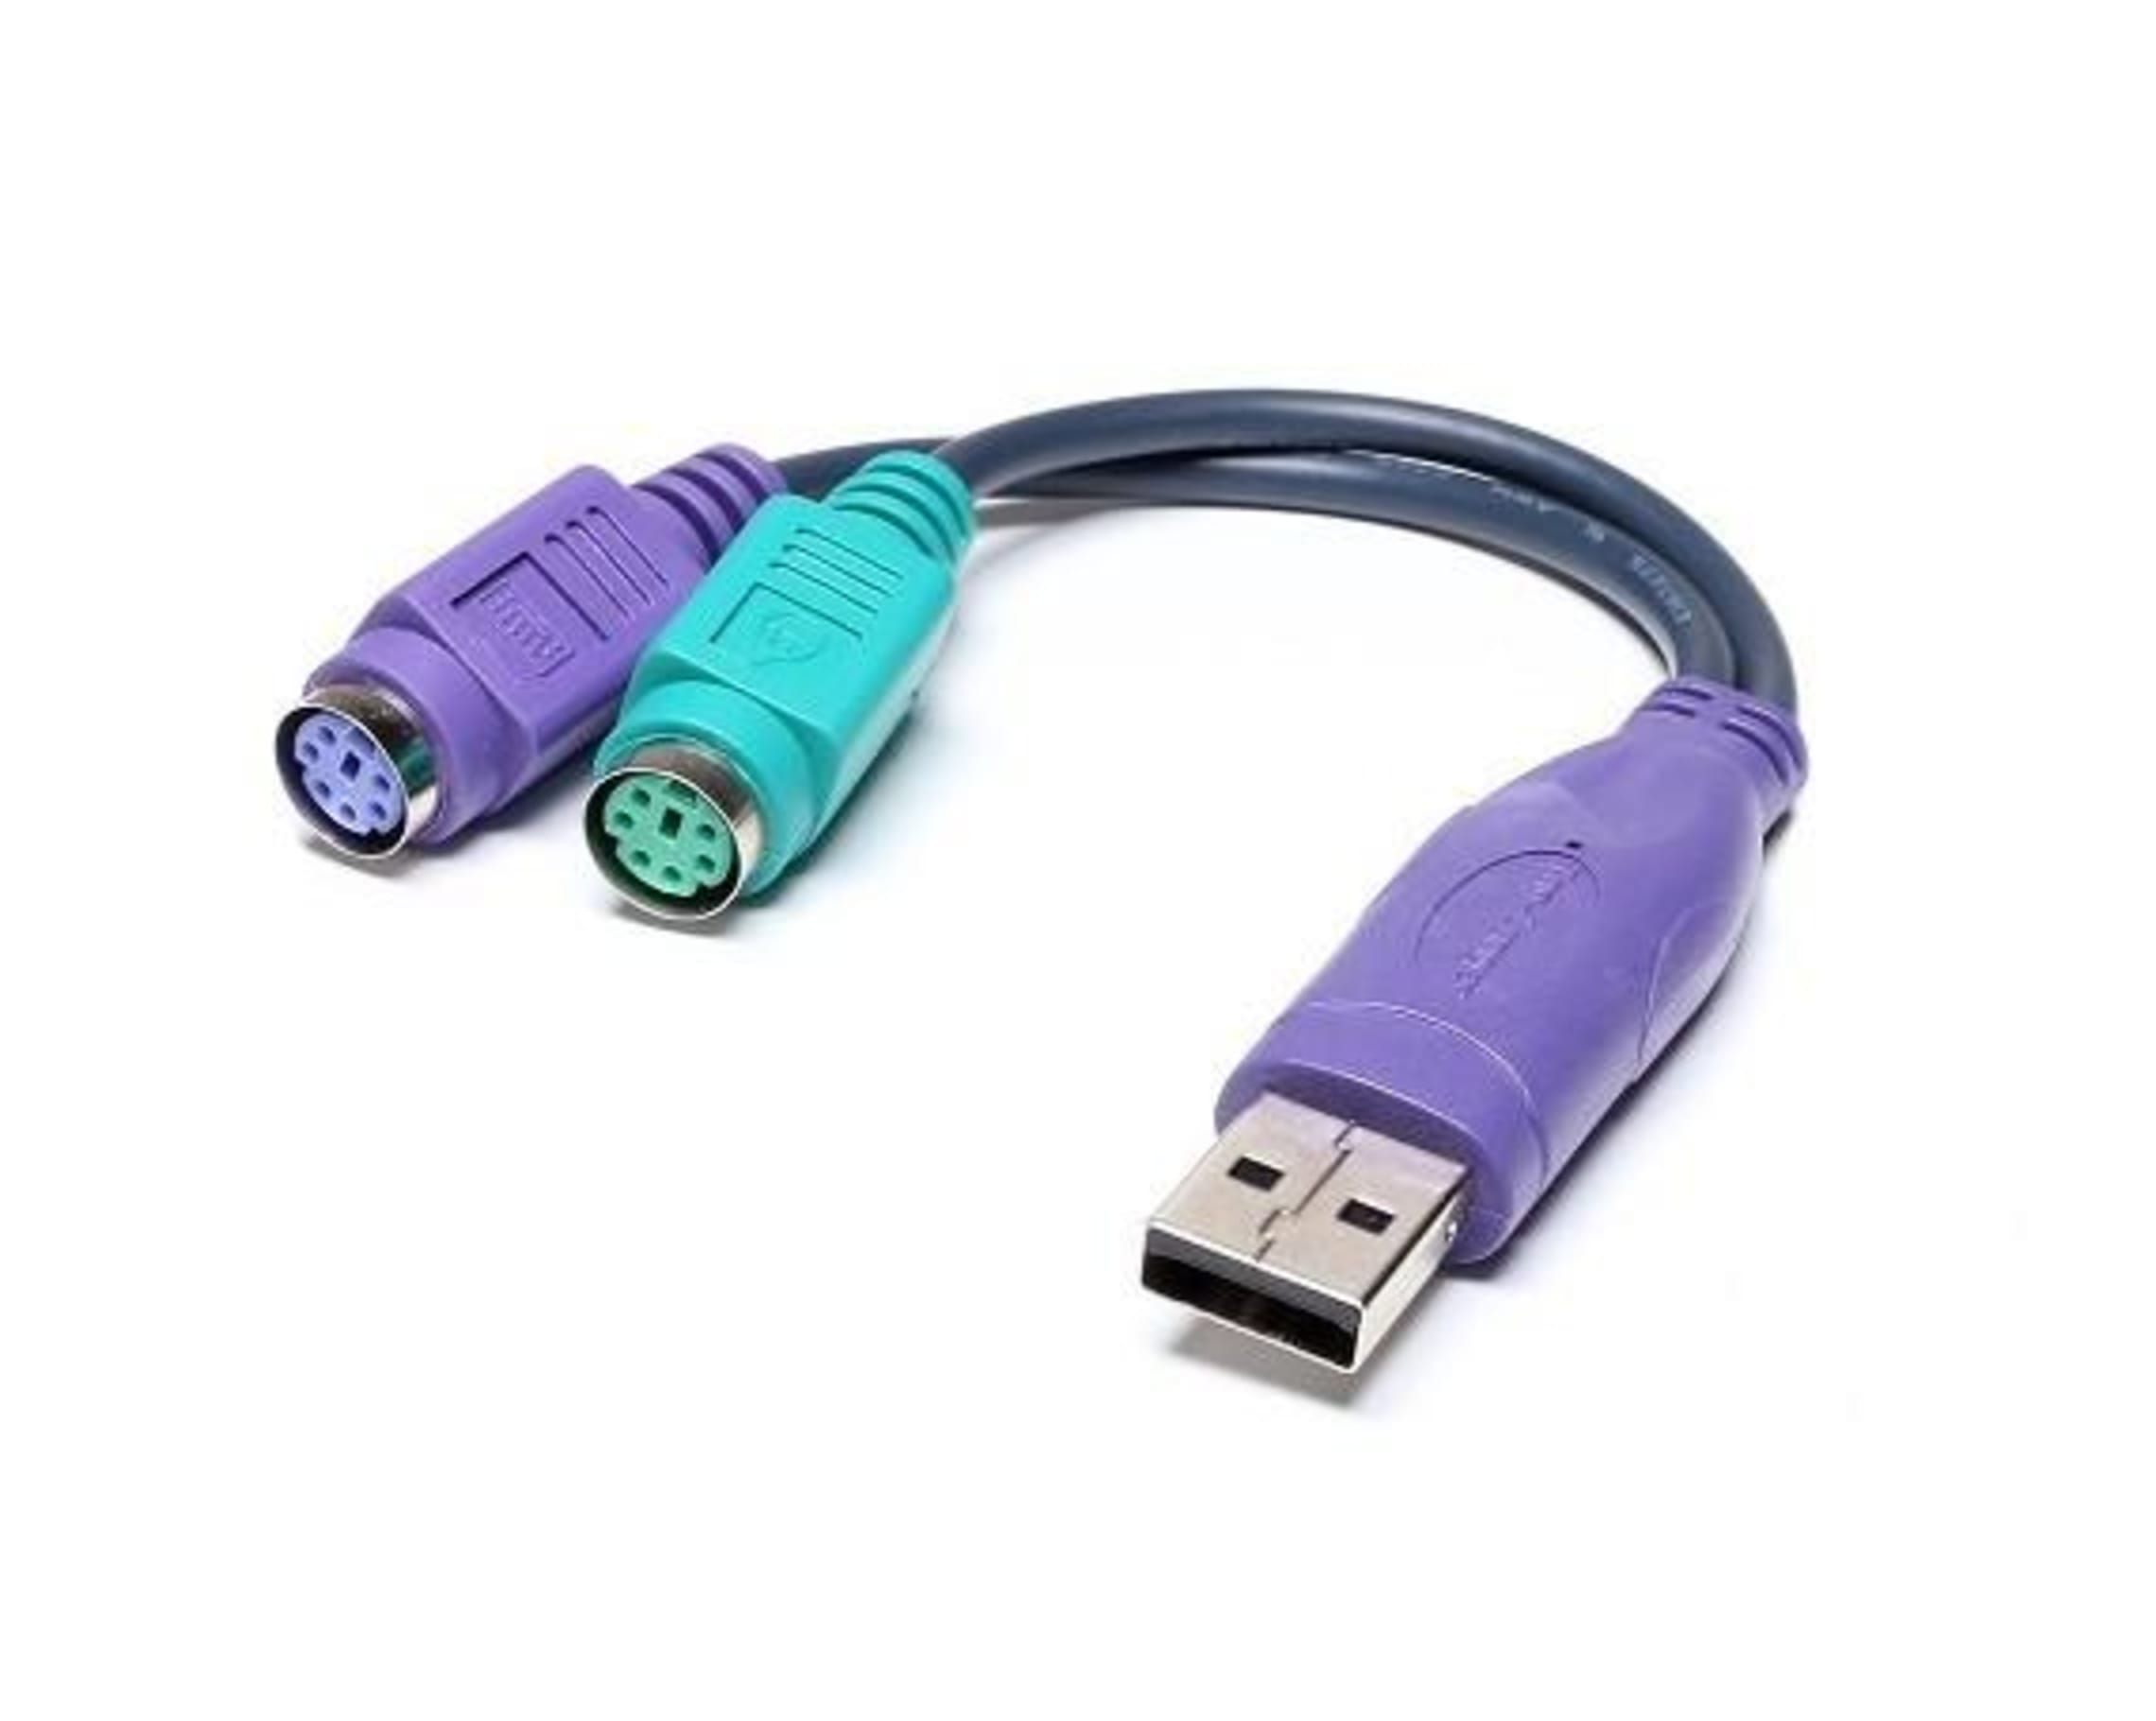 Usb vid 2c4e. Переходник PS/2 Ningbo md6m, PS/2 (M) - USB A(F). Переходник Espada USB 2.0 A - PS/2 x2. Переходник с PS/2 на USB для KVM. PS/2 to 2ps/2 переходник.